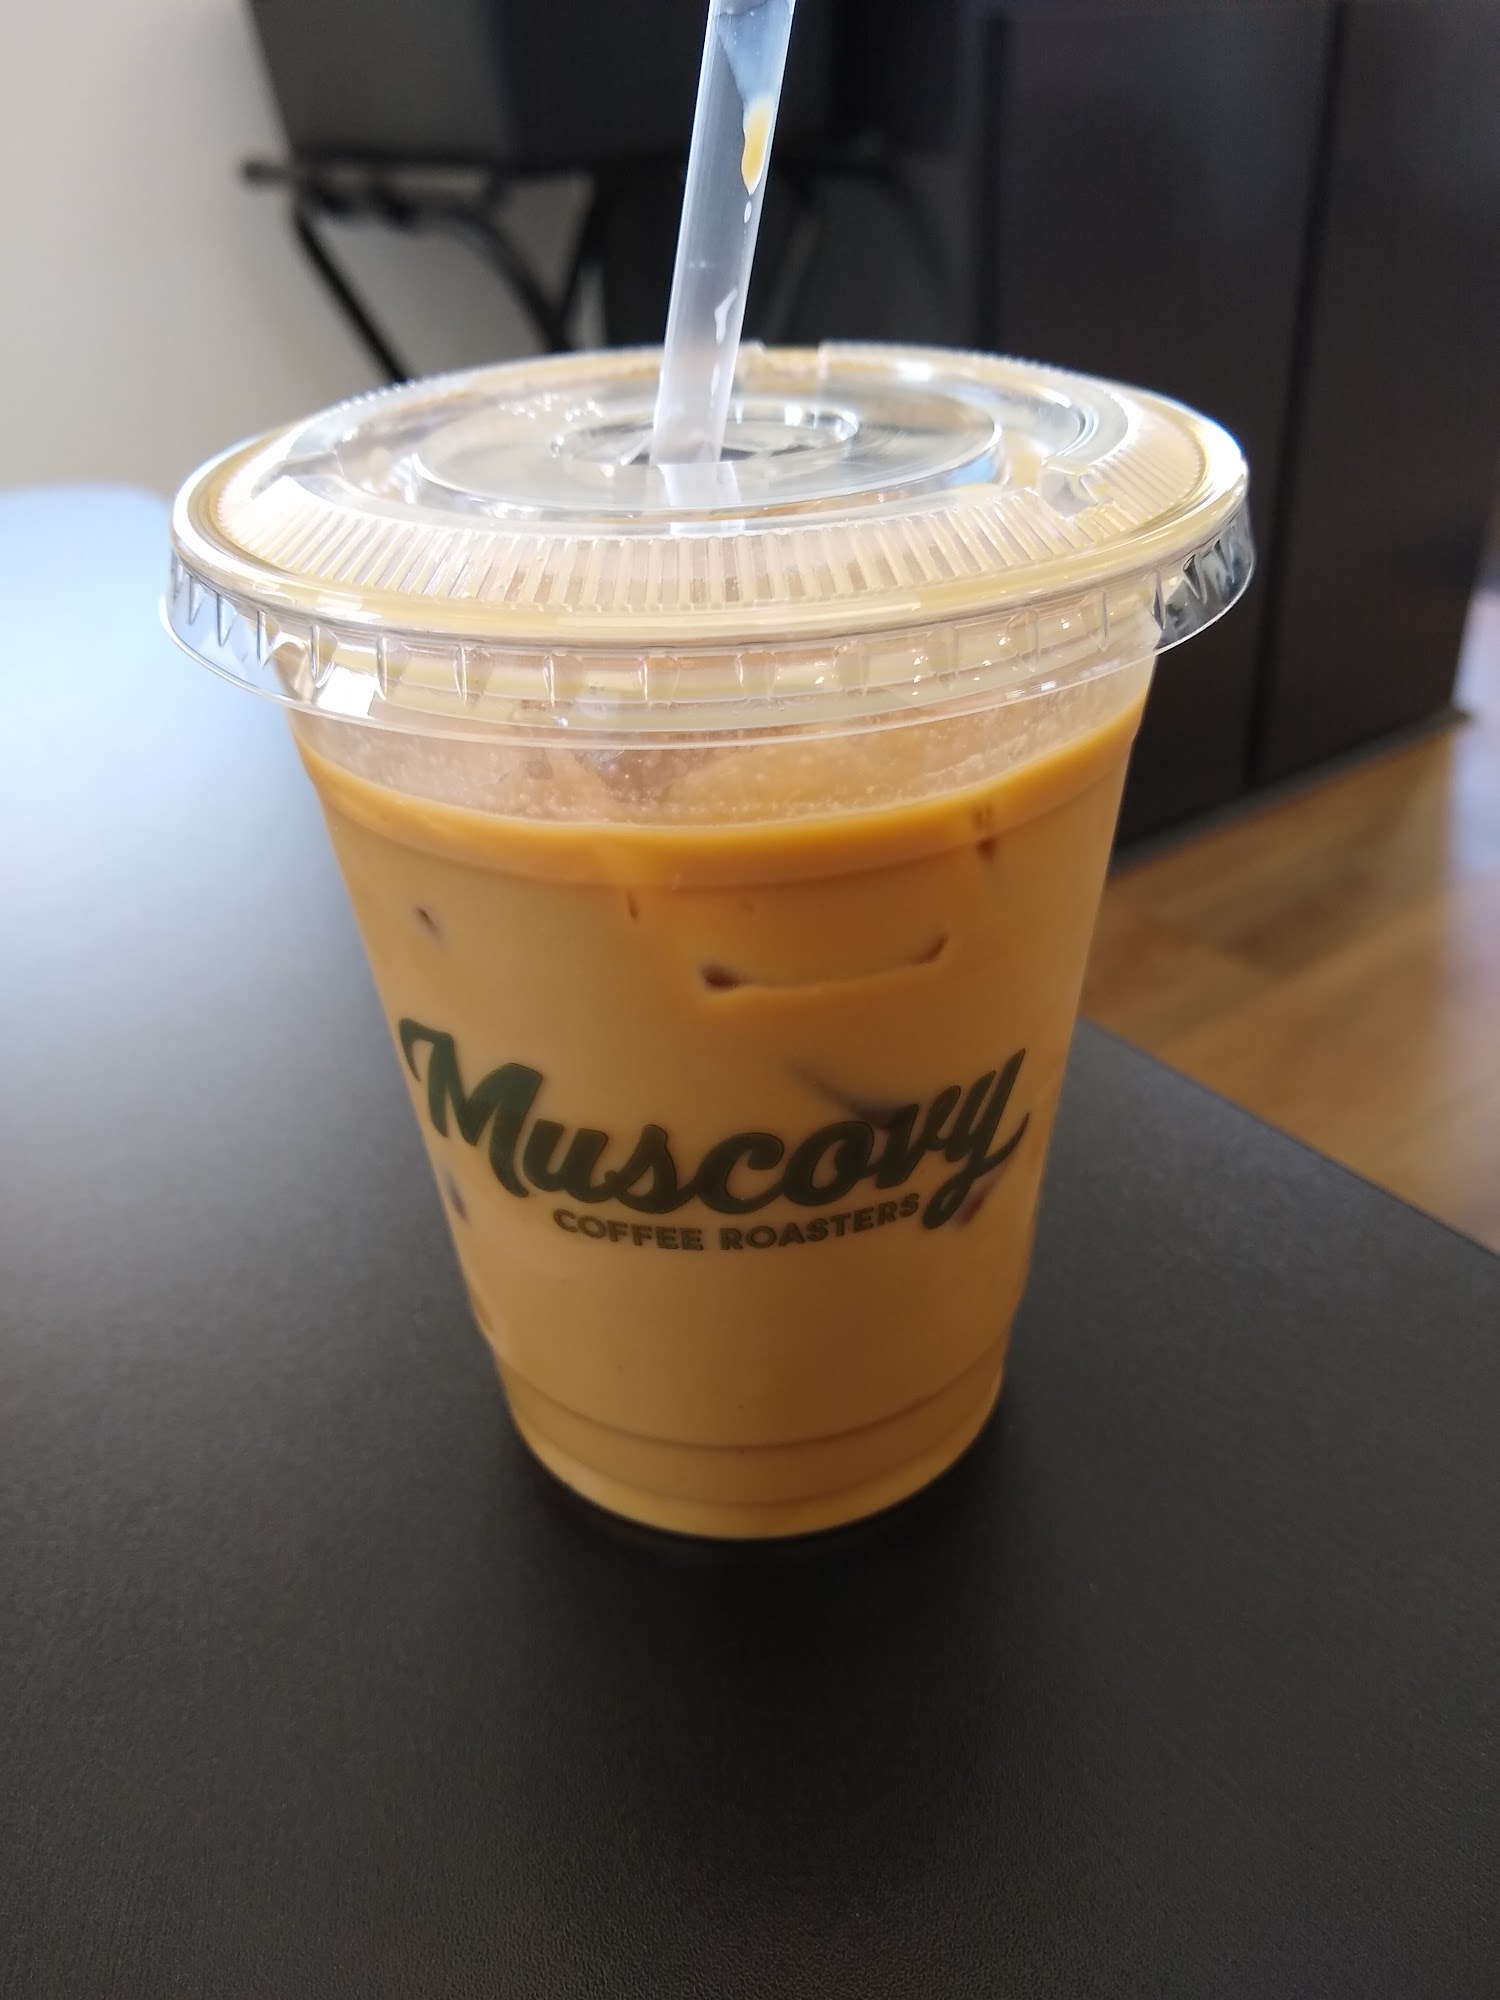 Muscovy Coffee Roasters